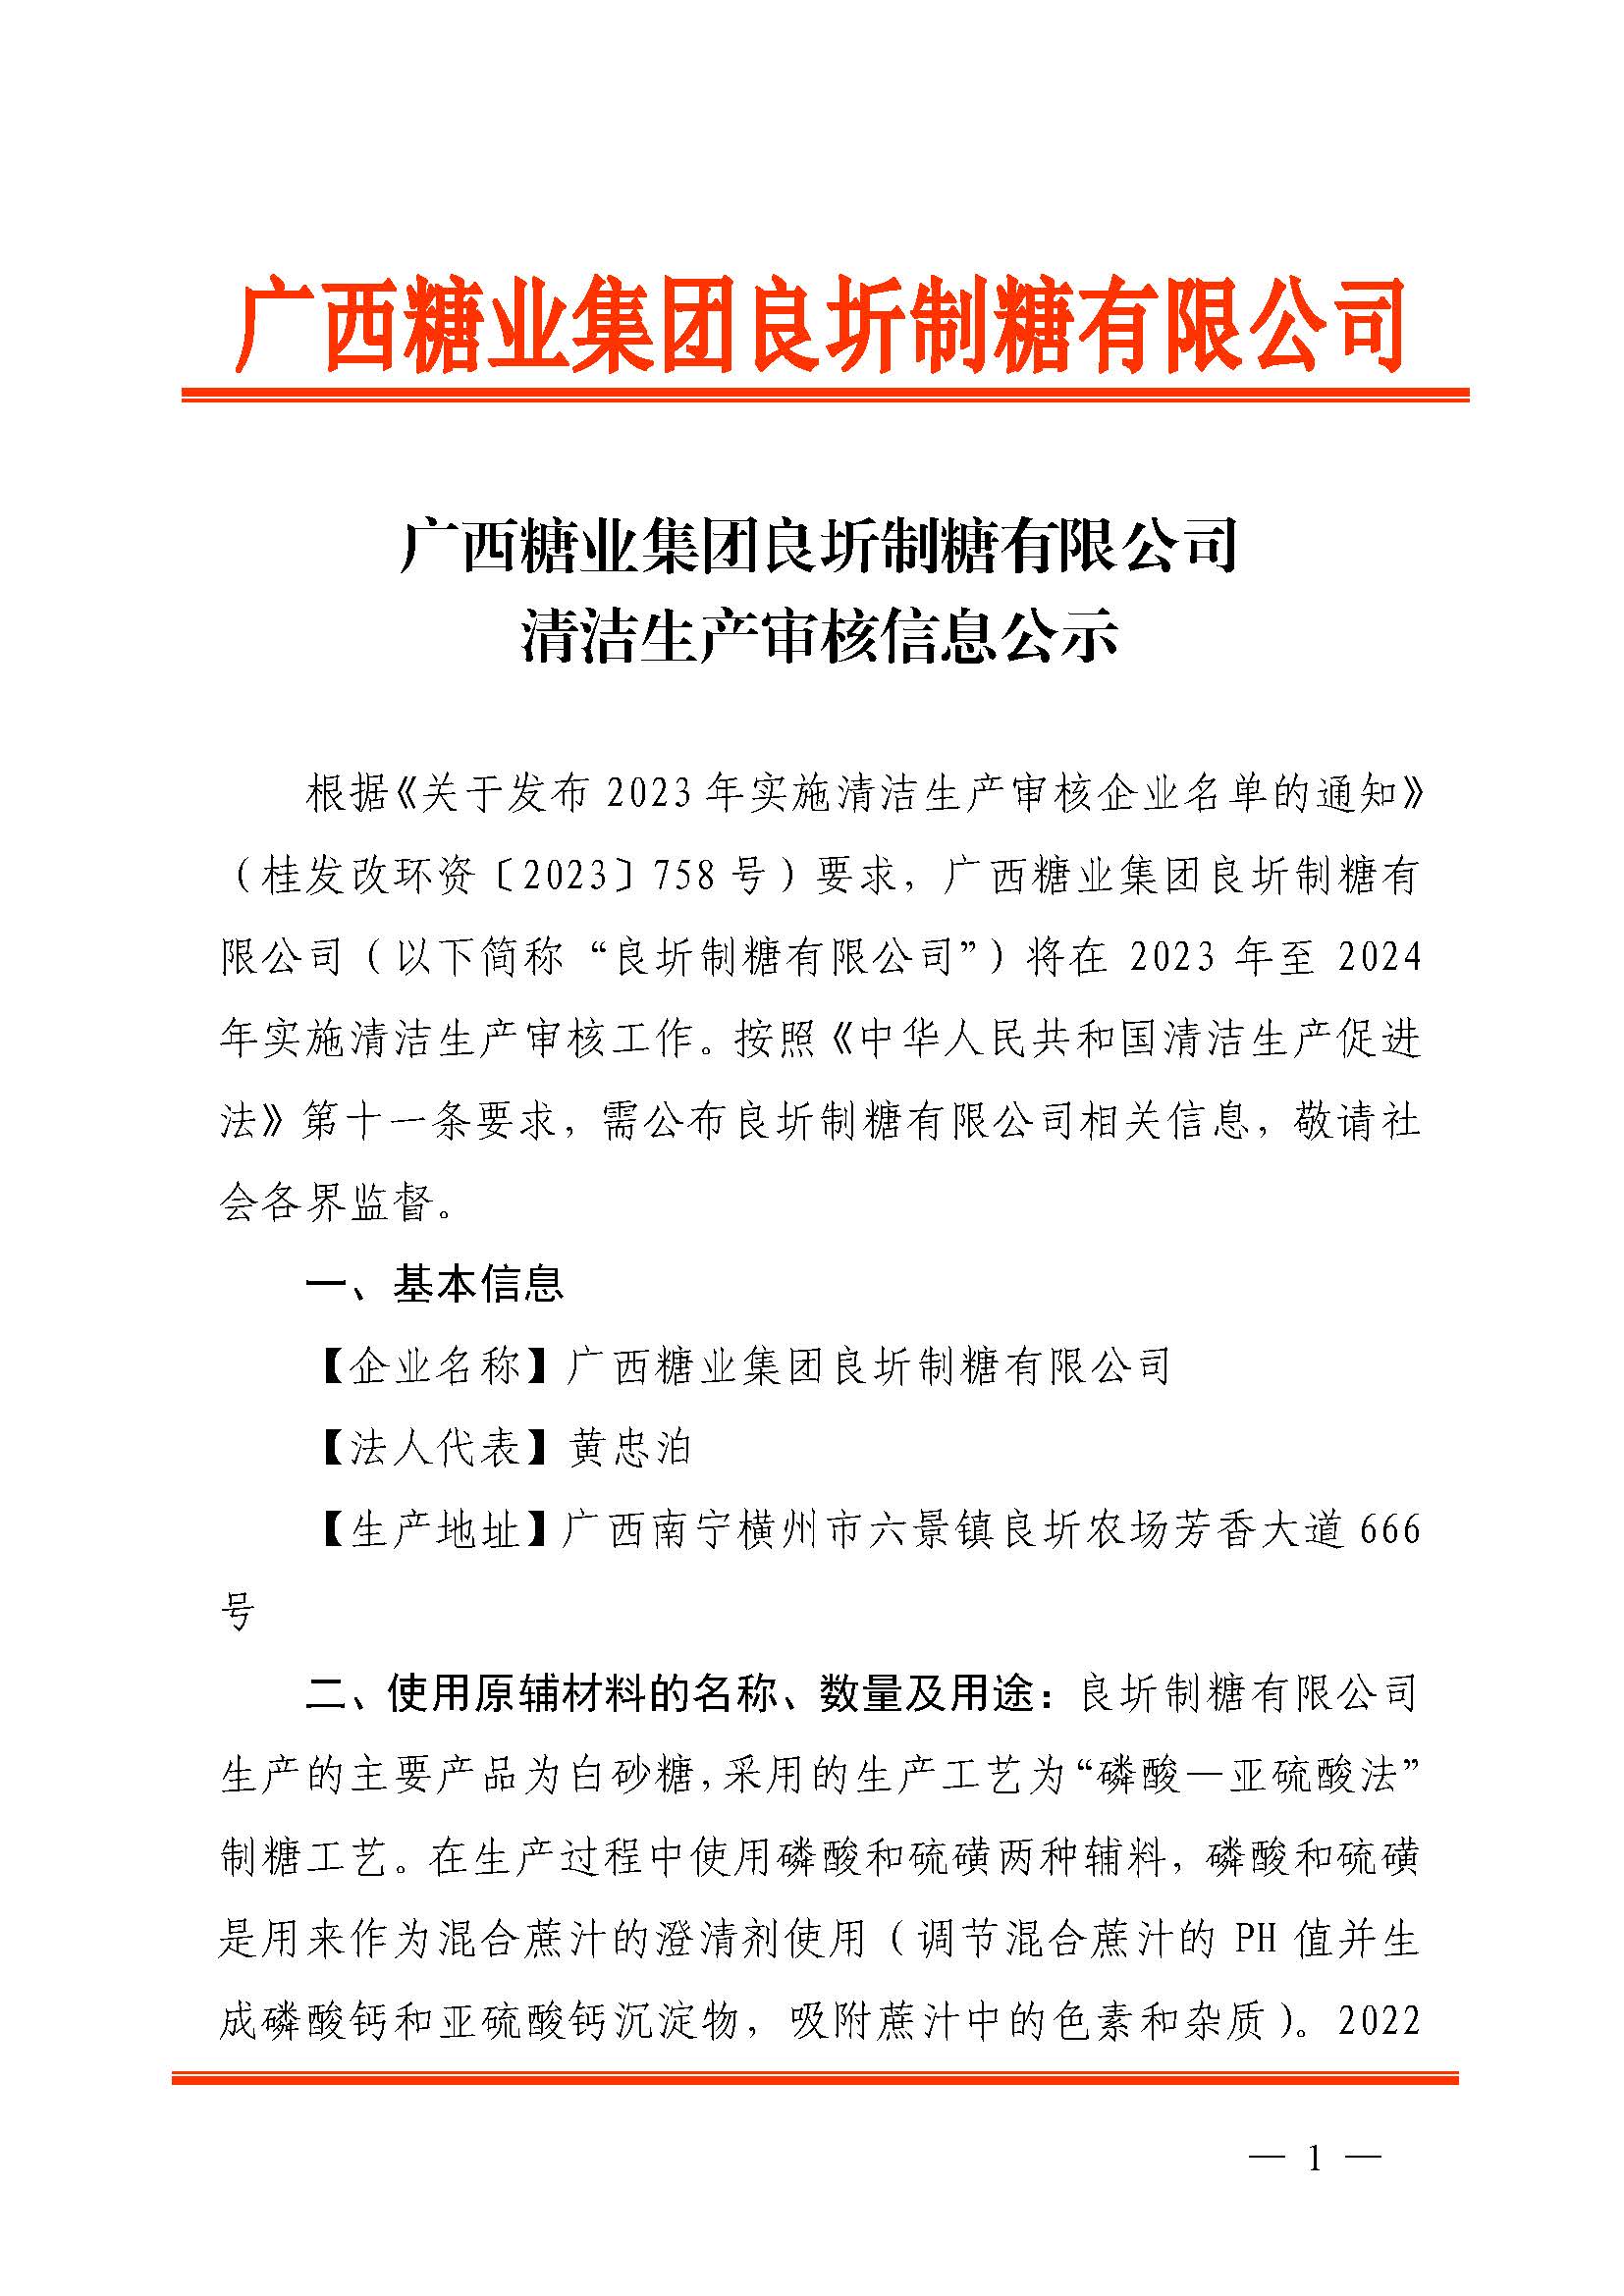 篮球买球APP官方官网「中国」有限公司良圻制糖有限公司清洁生产审核信息公示_页面_1.jpg